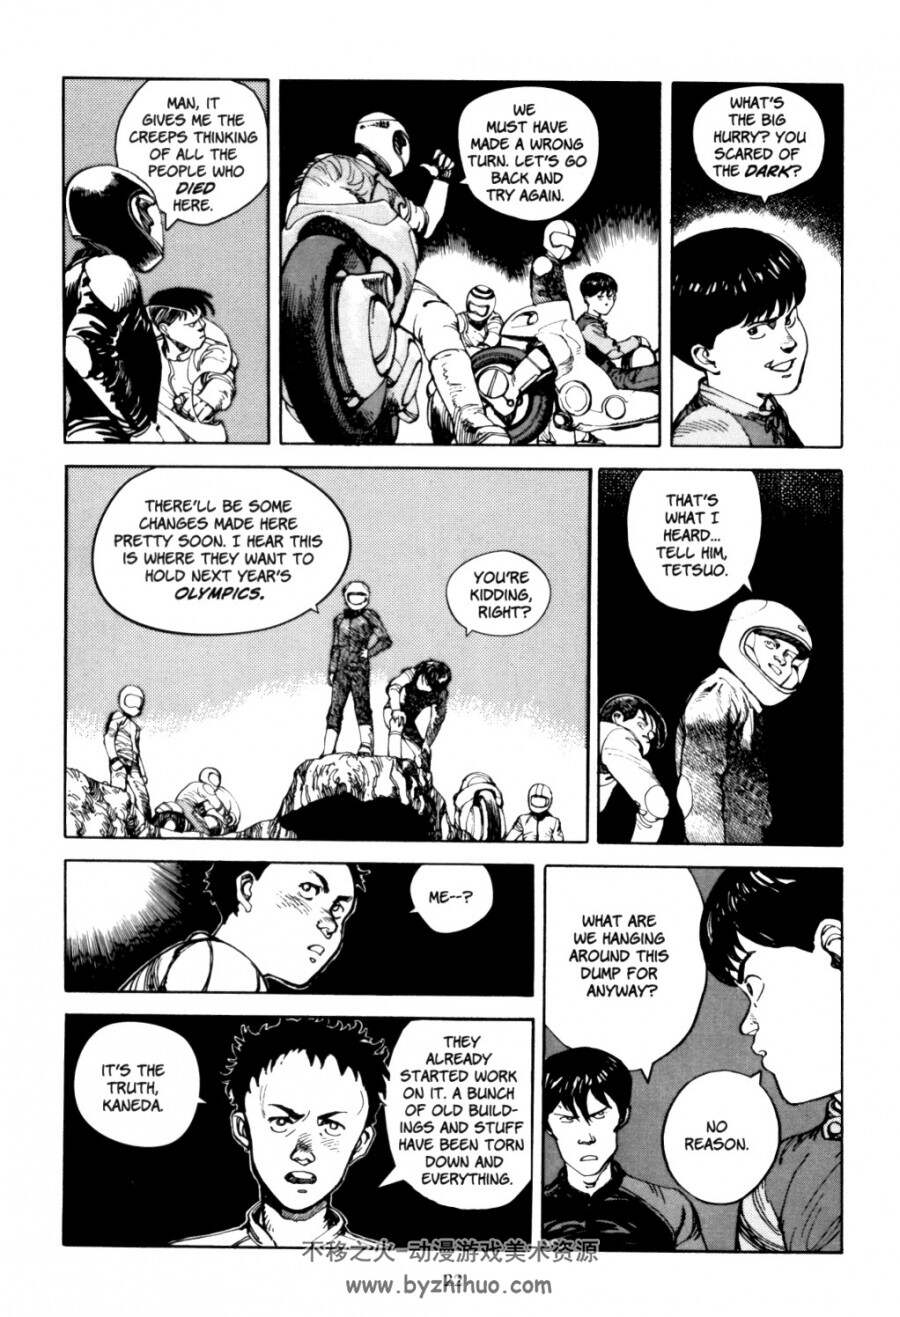 阿基拉Akira英文版漫画合集共6卷 百度网盘分享观看